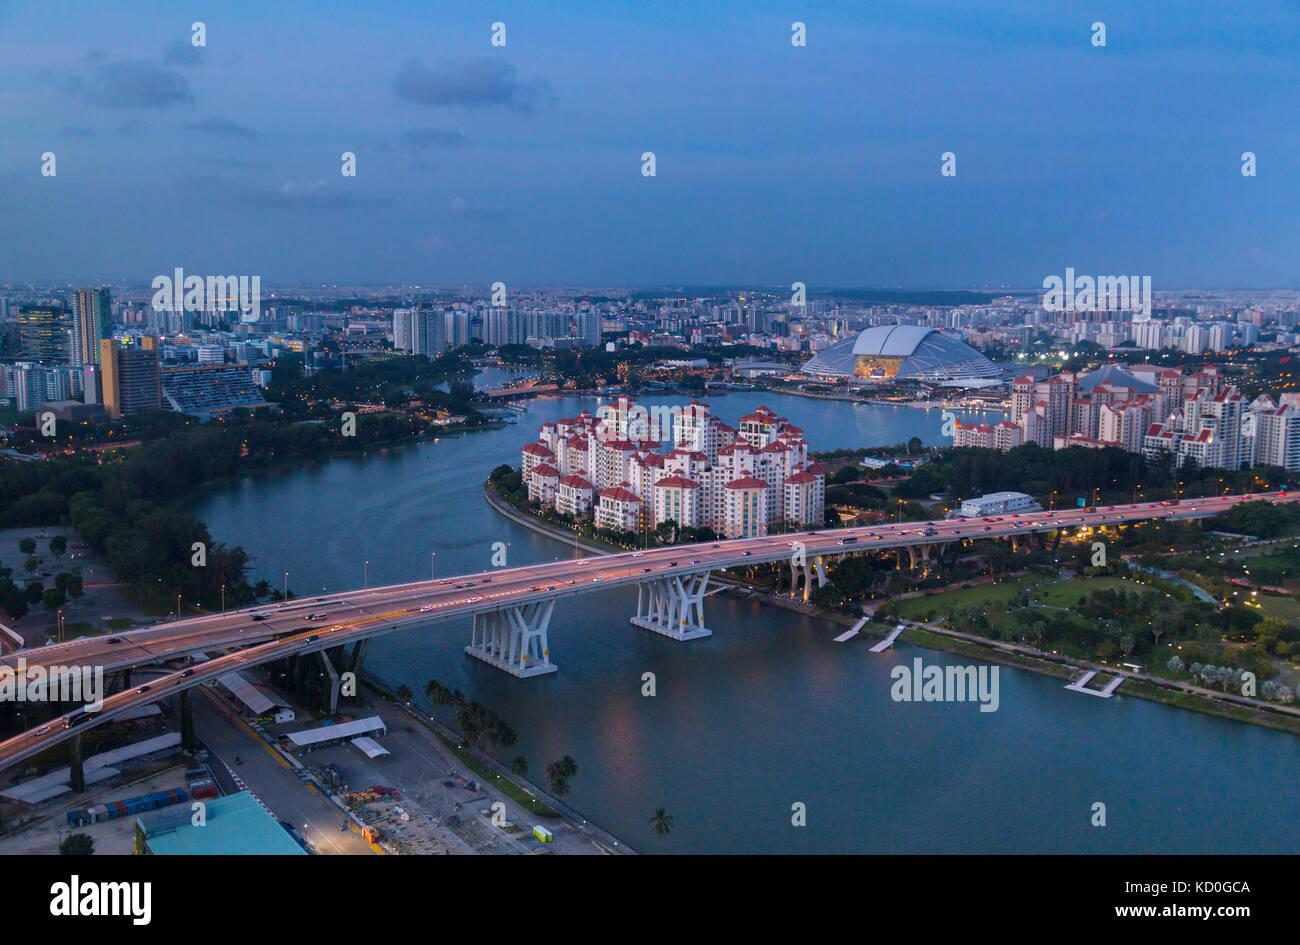 Erhöhte Stadtbild mit Autobahnbrücke und apartment Entwicklungen in der Dämmerung, Singapur, Südostasien Stockfoto